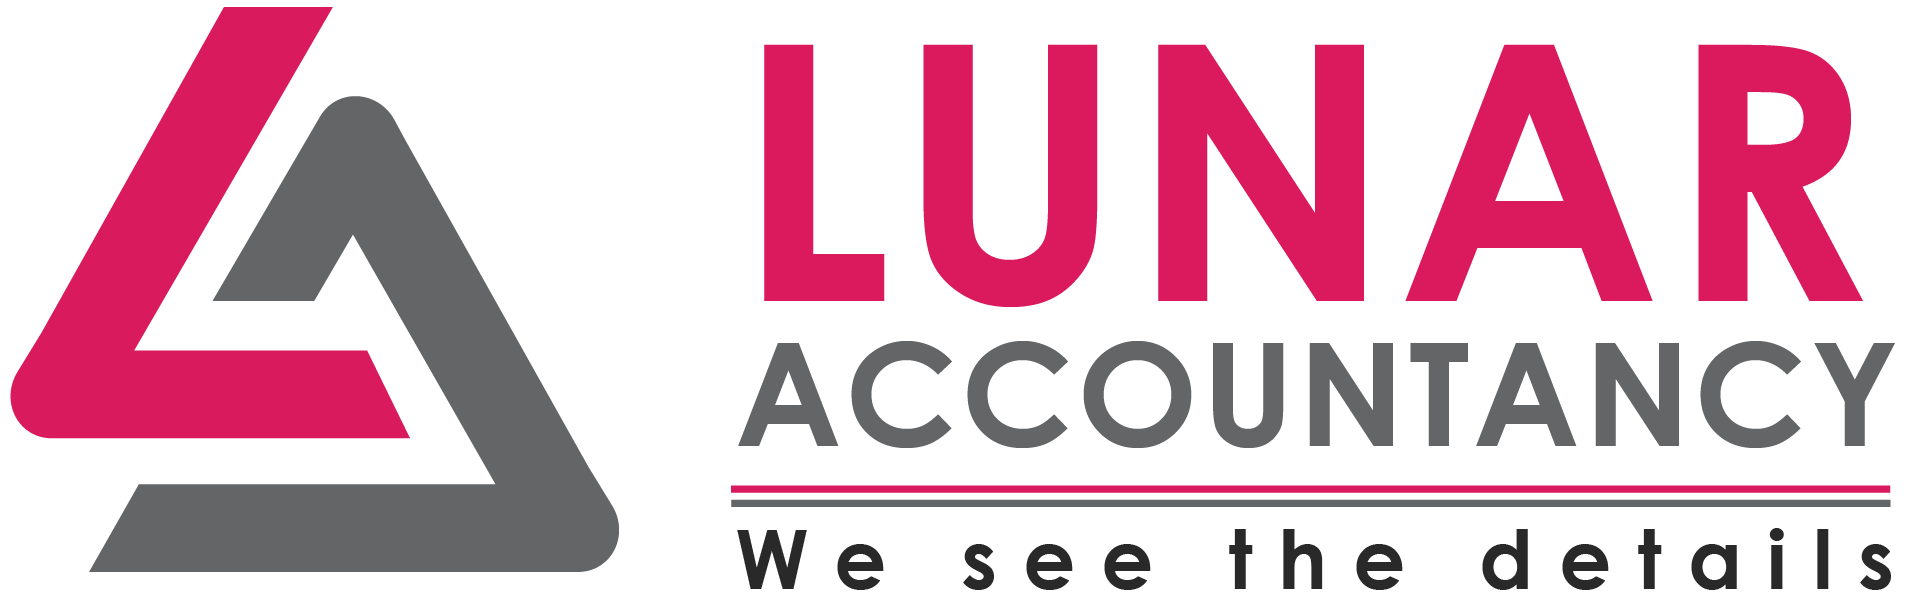 Lunar Accountancy